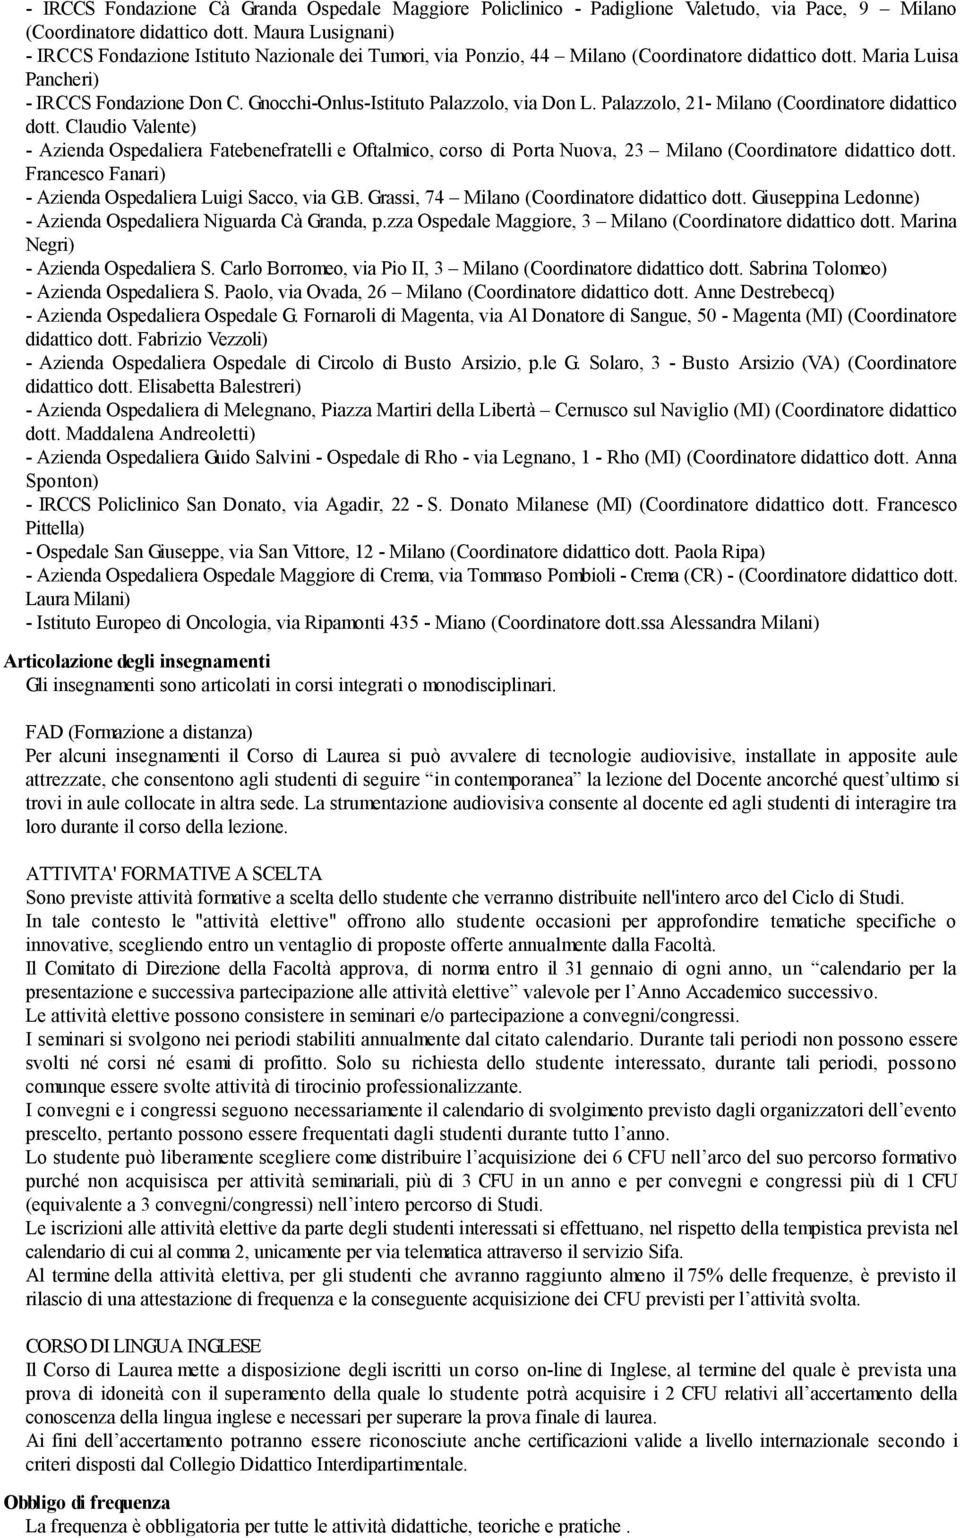 Gnocchi-Onlus-Istituto Palazzolo, via Don L. Palazzolo, 21- Milano (Coordinatore didattico dott.